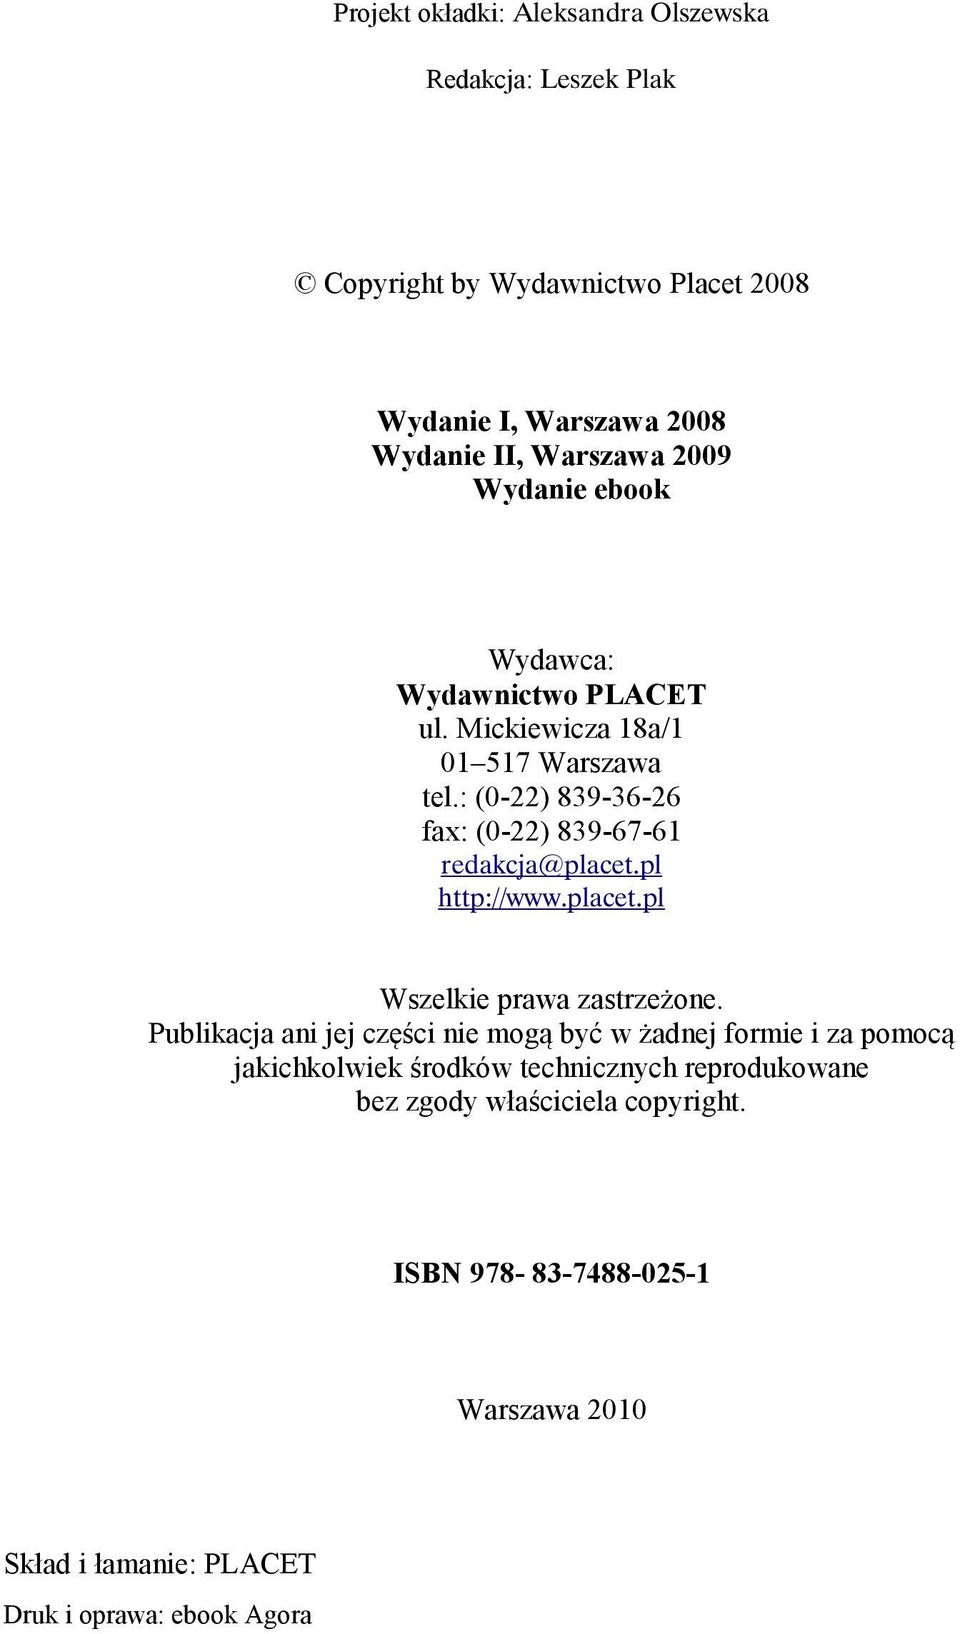 : (0-22) 839-36-26 fax: (0-22) 839-67-61 redakcja@placet.pl http://www.placet.pl Wszelkie prawa zastrzeżone.